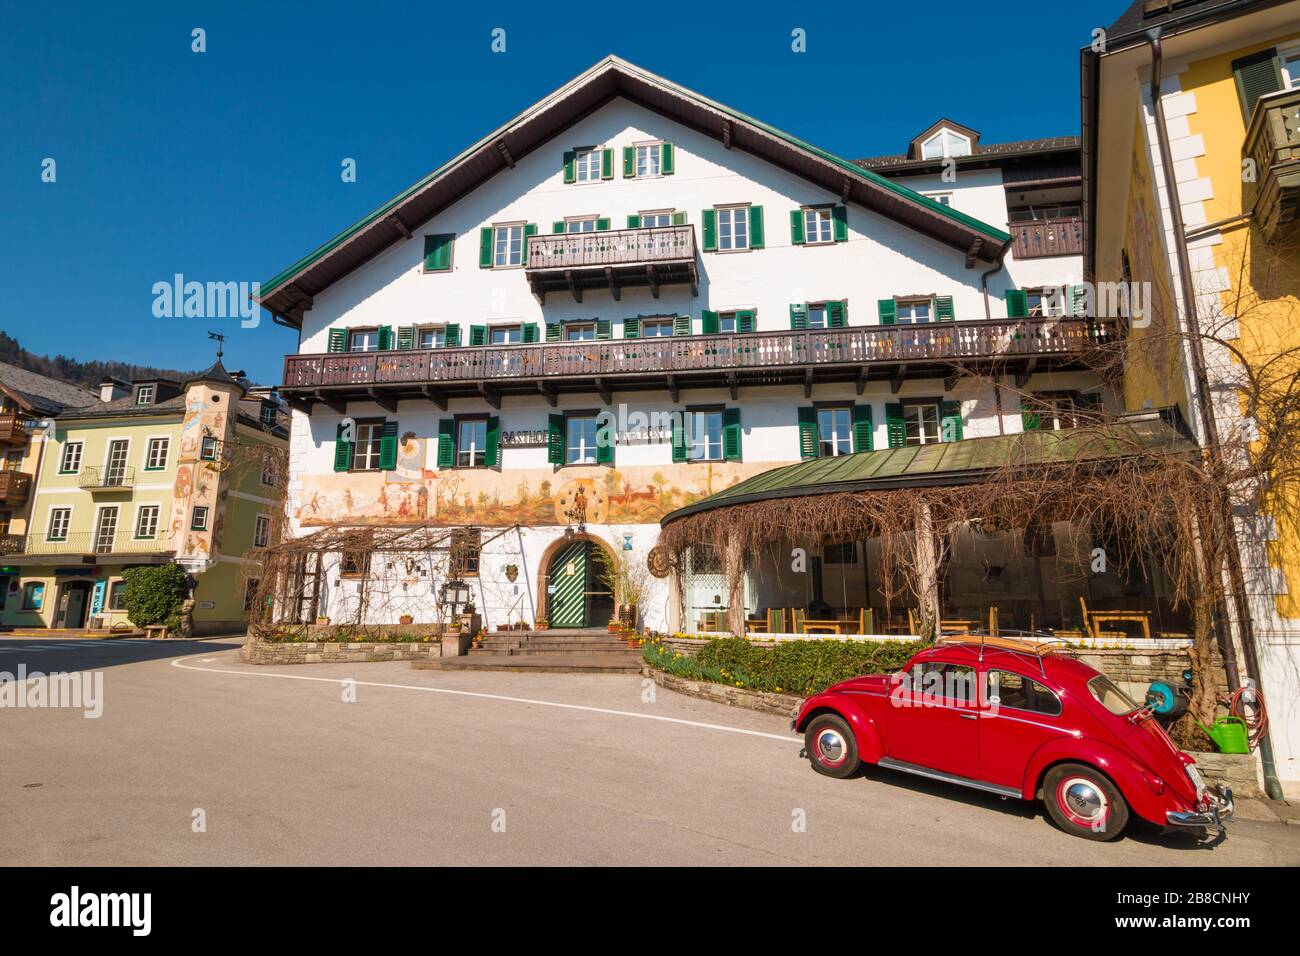 St.Gilgen, Austria - March 20, 2020: Red retro Volkswagen Beetle parked in front of Hotel Gasthof zur Post on Mozartplatz. Stock Photo